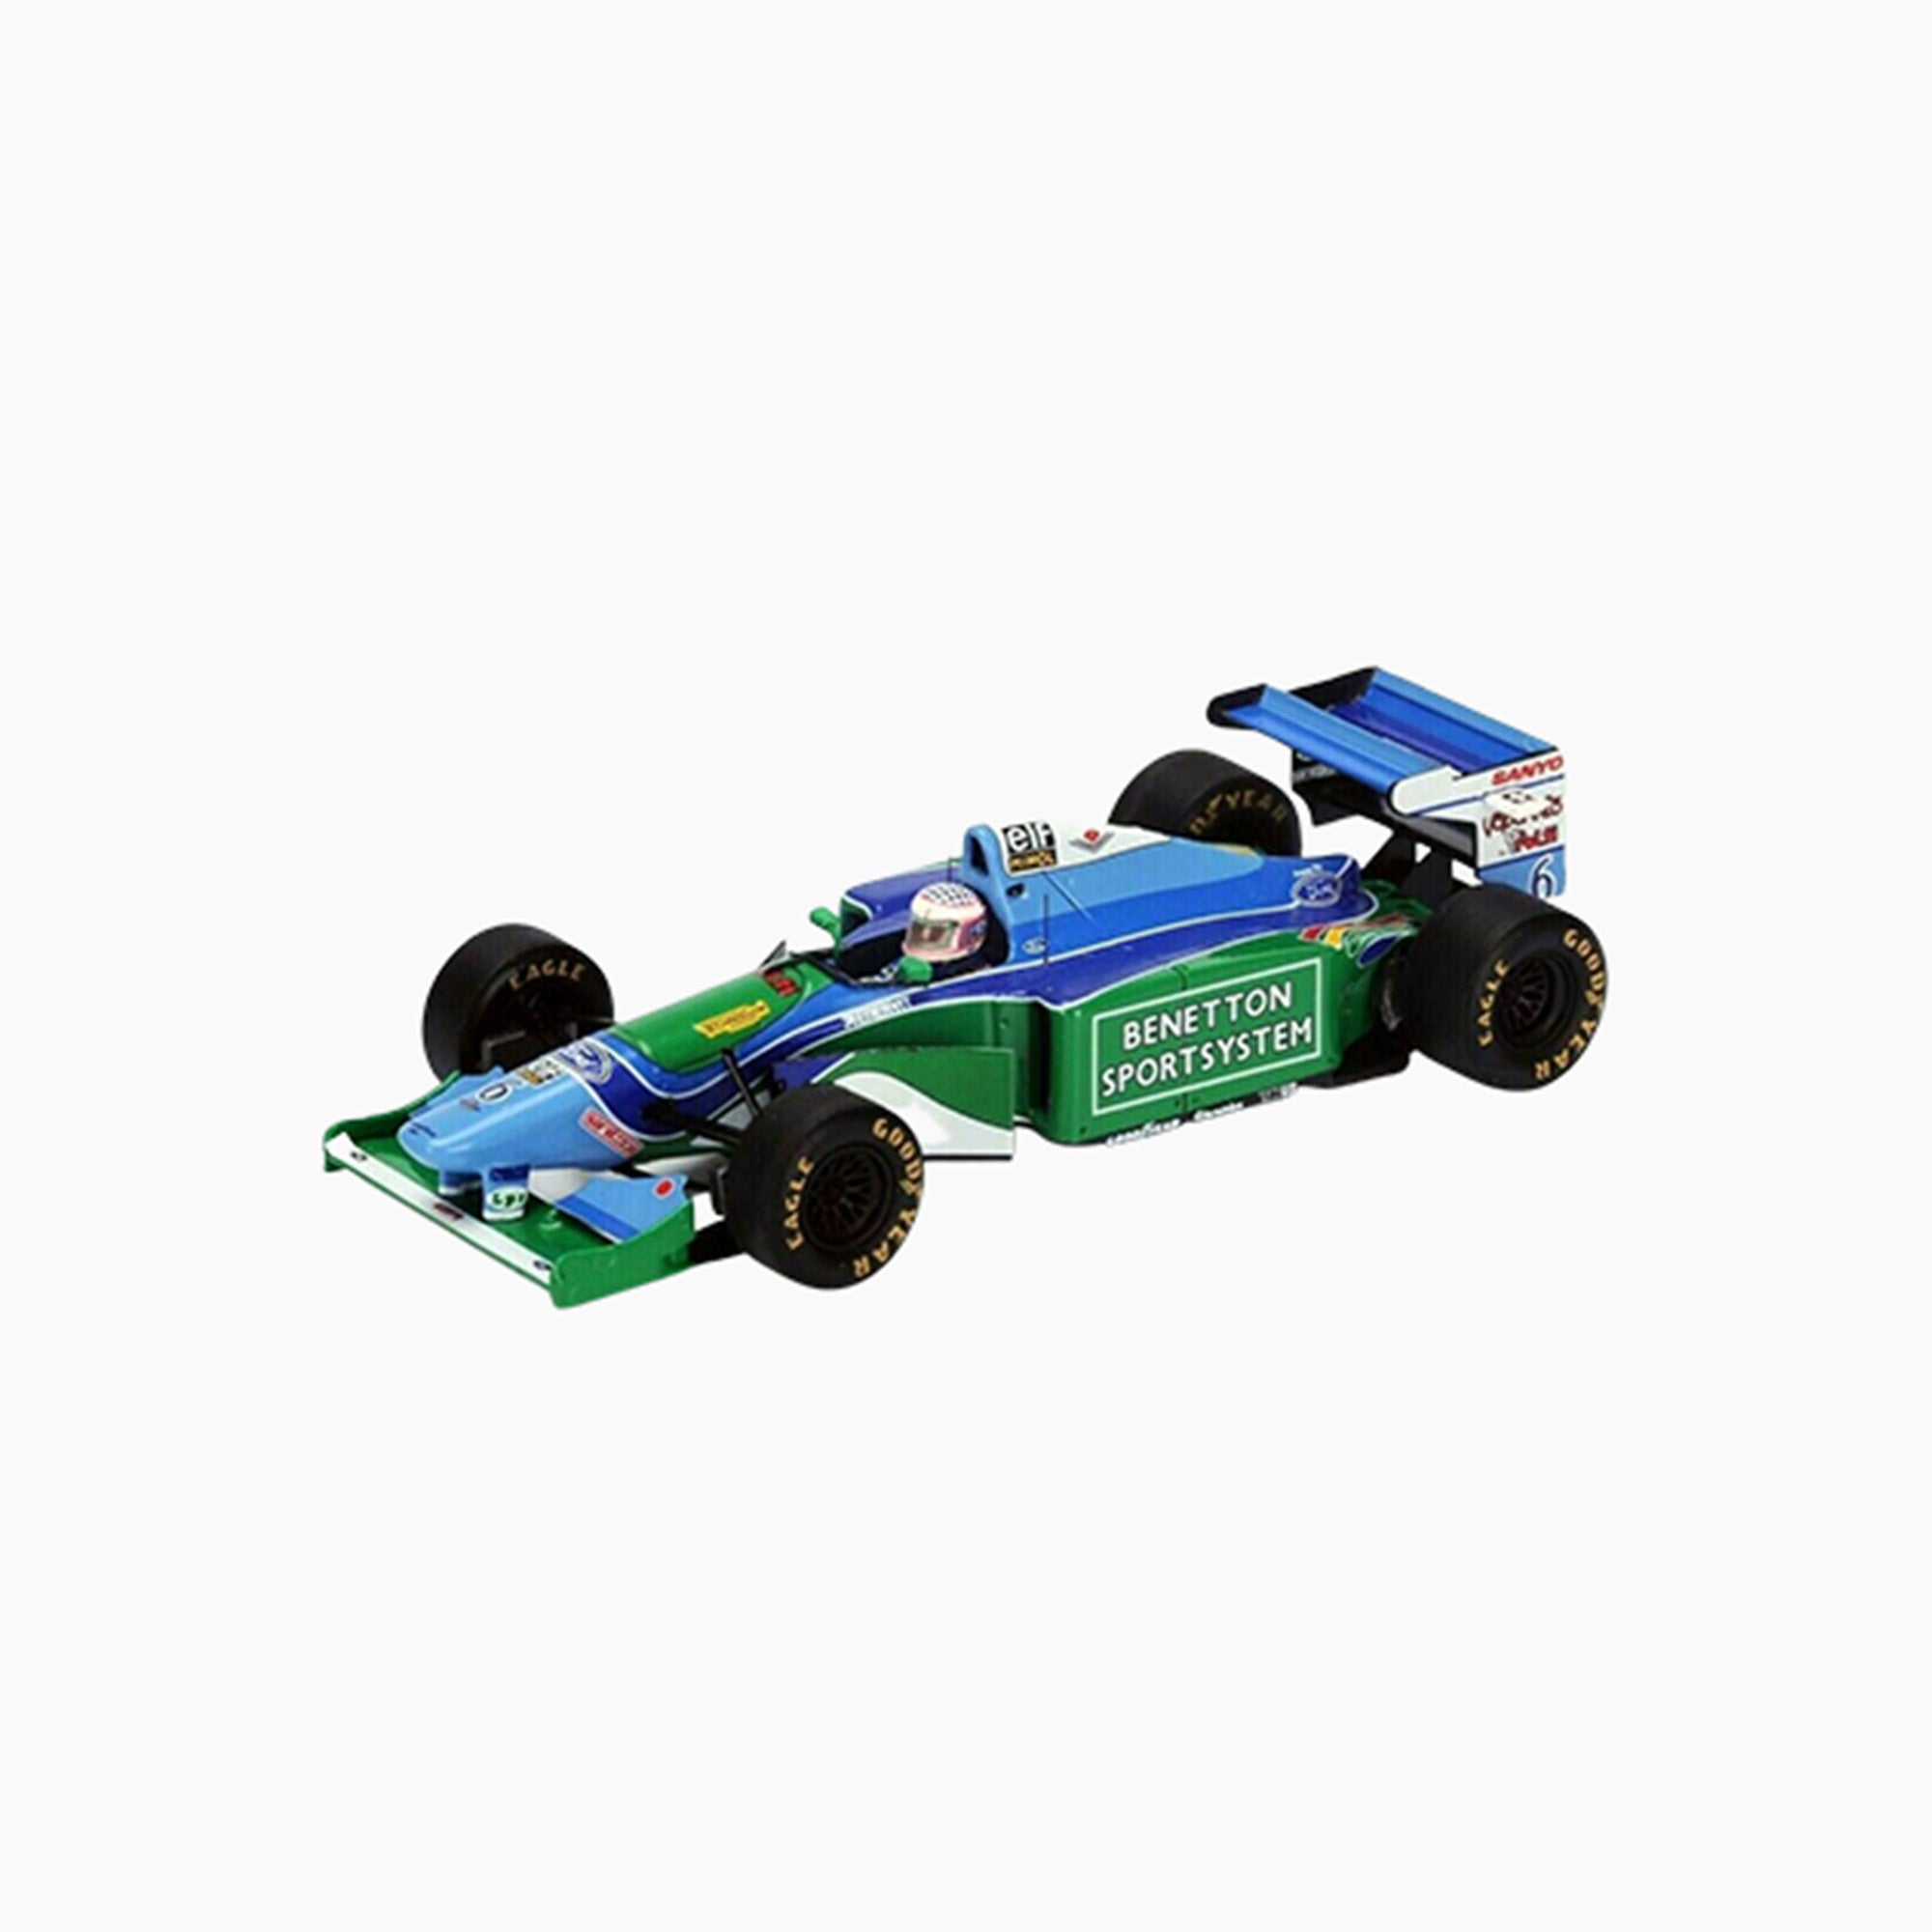 Benetton B194 n.6 Monaco GP 1994 | 1:43 Scale Model-1:43 Scale Model-Spark Models-gpx-store